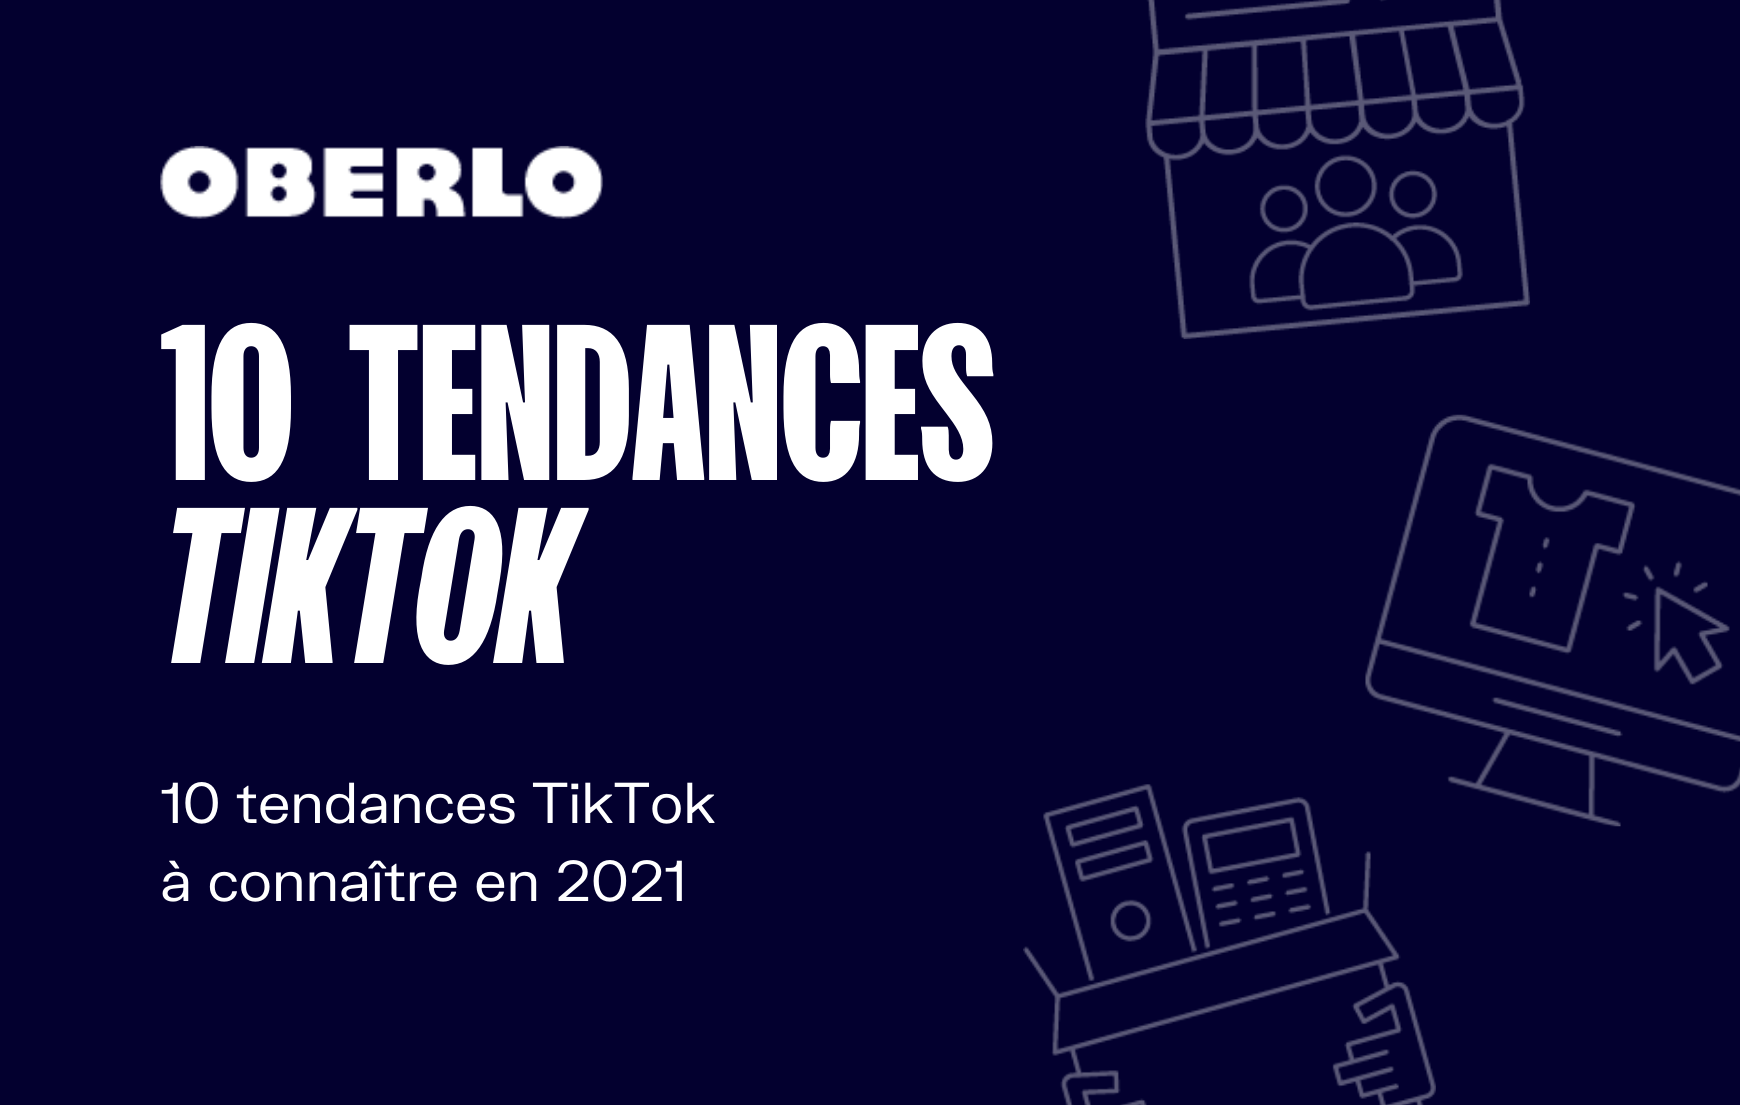 TikTok tendances 2021 : 10 chiffres à connaître pour percer